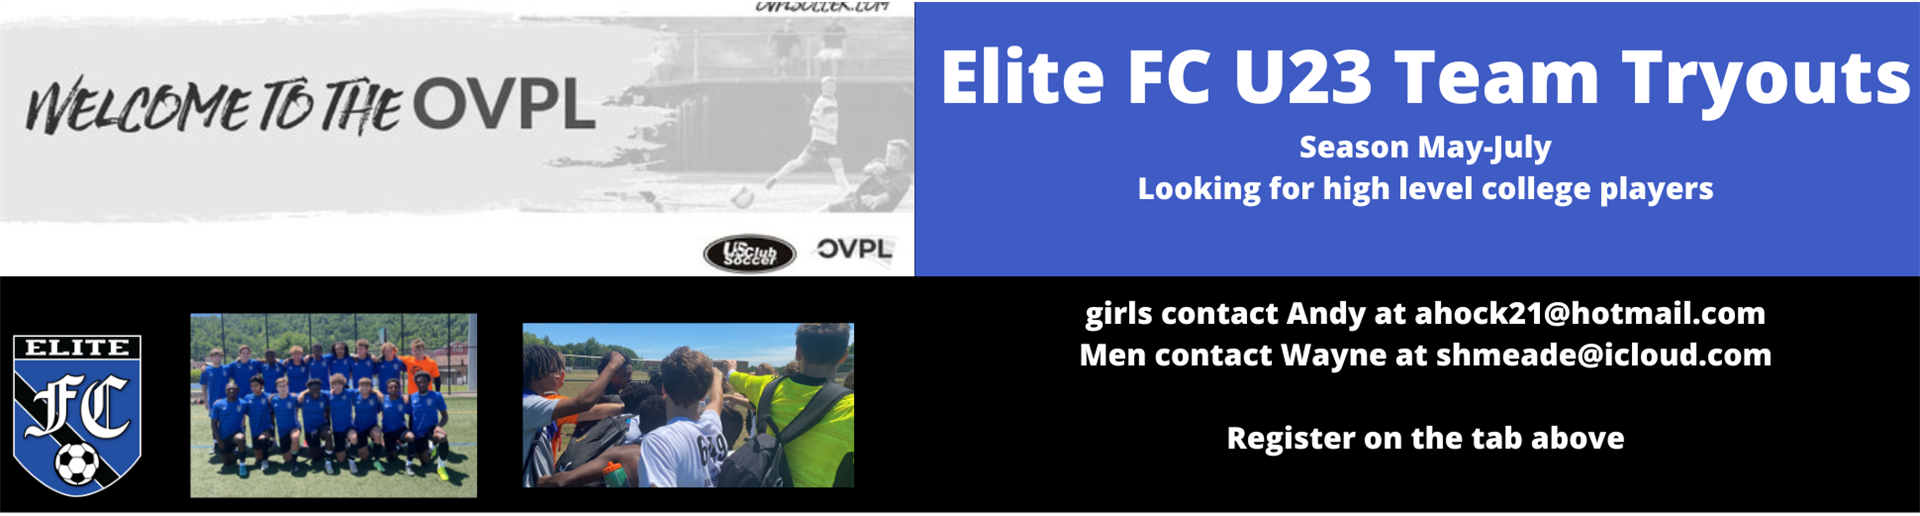 Elite FC U23 Men’s and Women’s teams info